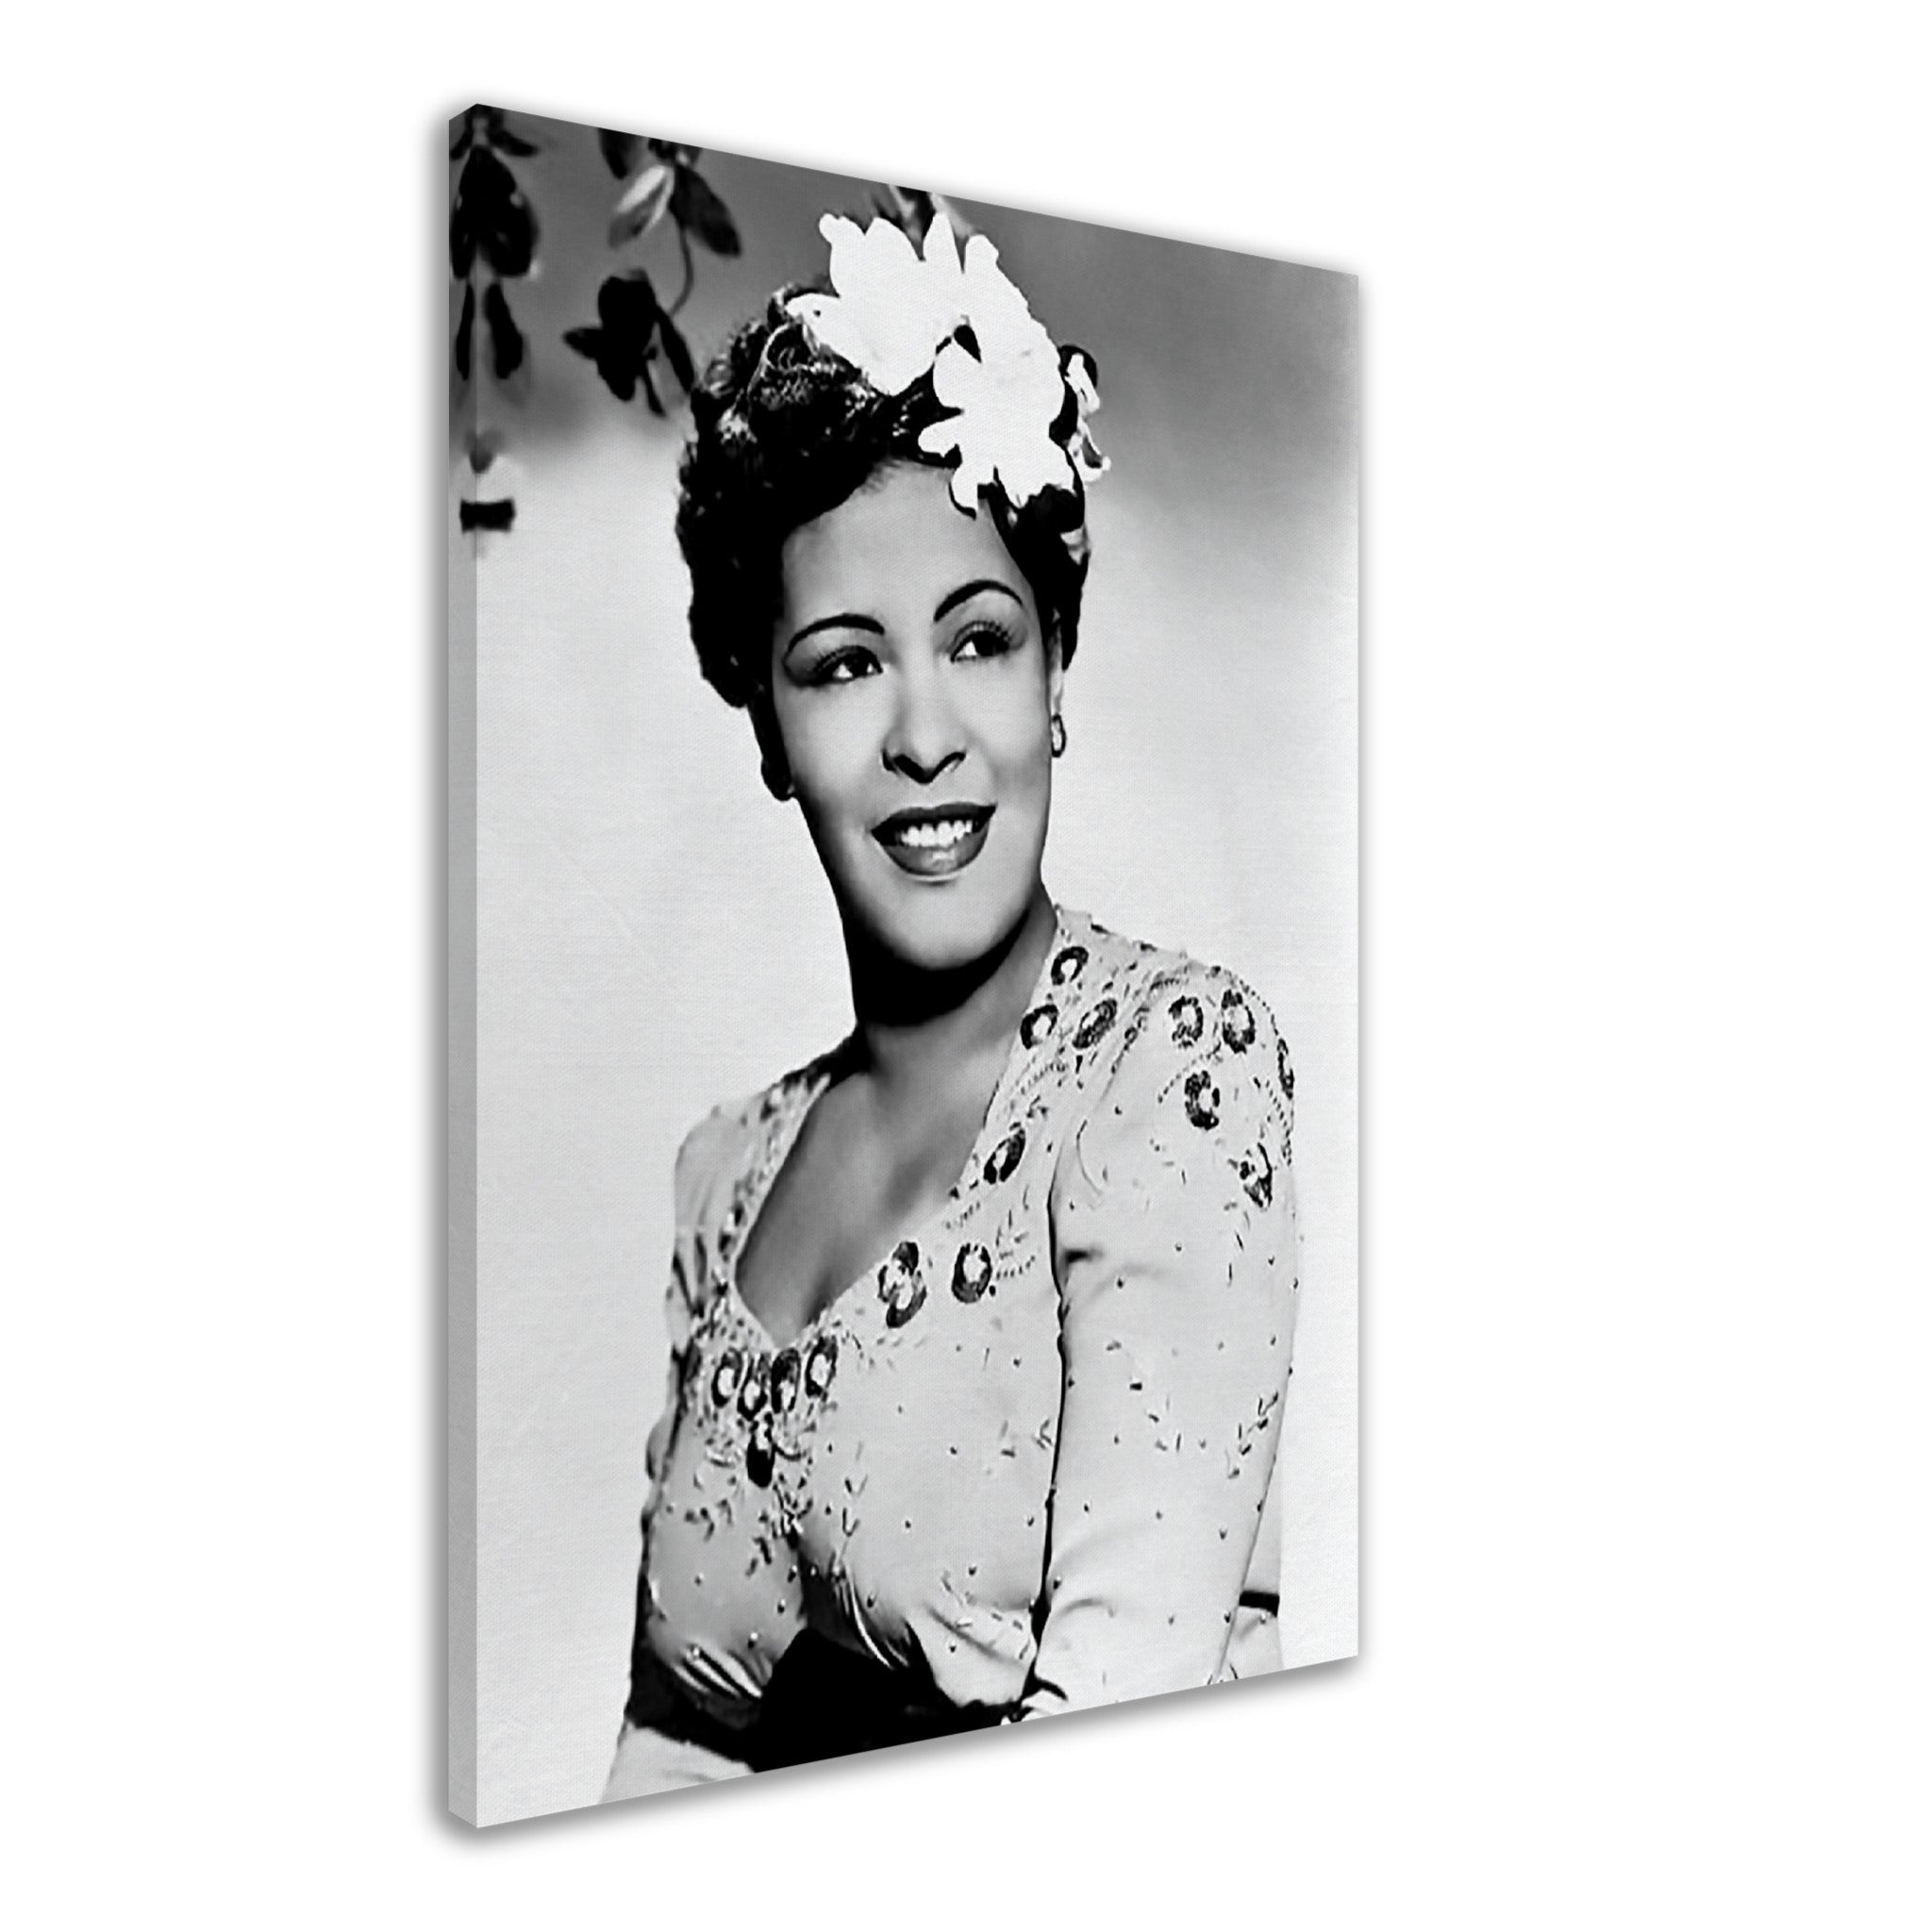 Billie Holiday Canvas, Lady Day Soul Singer, Vintage Billie Holiday Canvas Print - Legend Of Soul Music - WallArtPrints4U